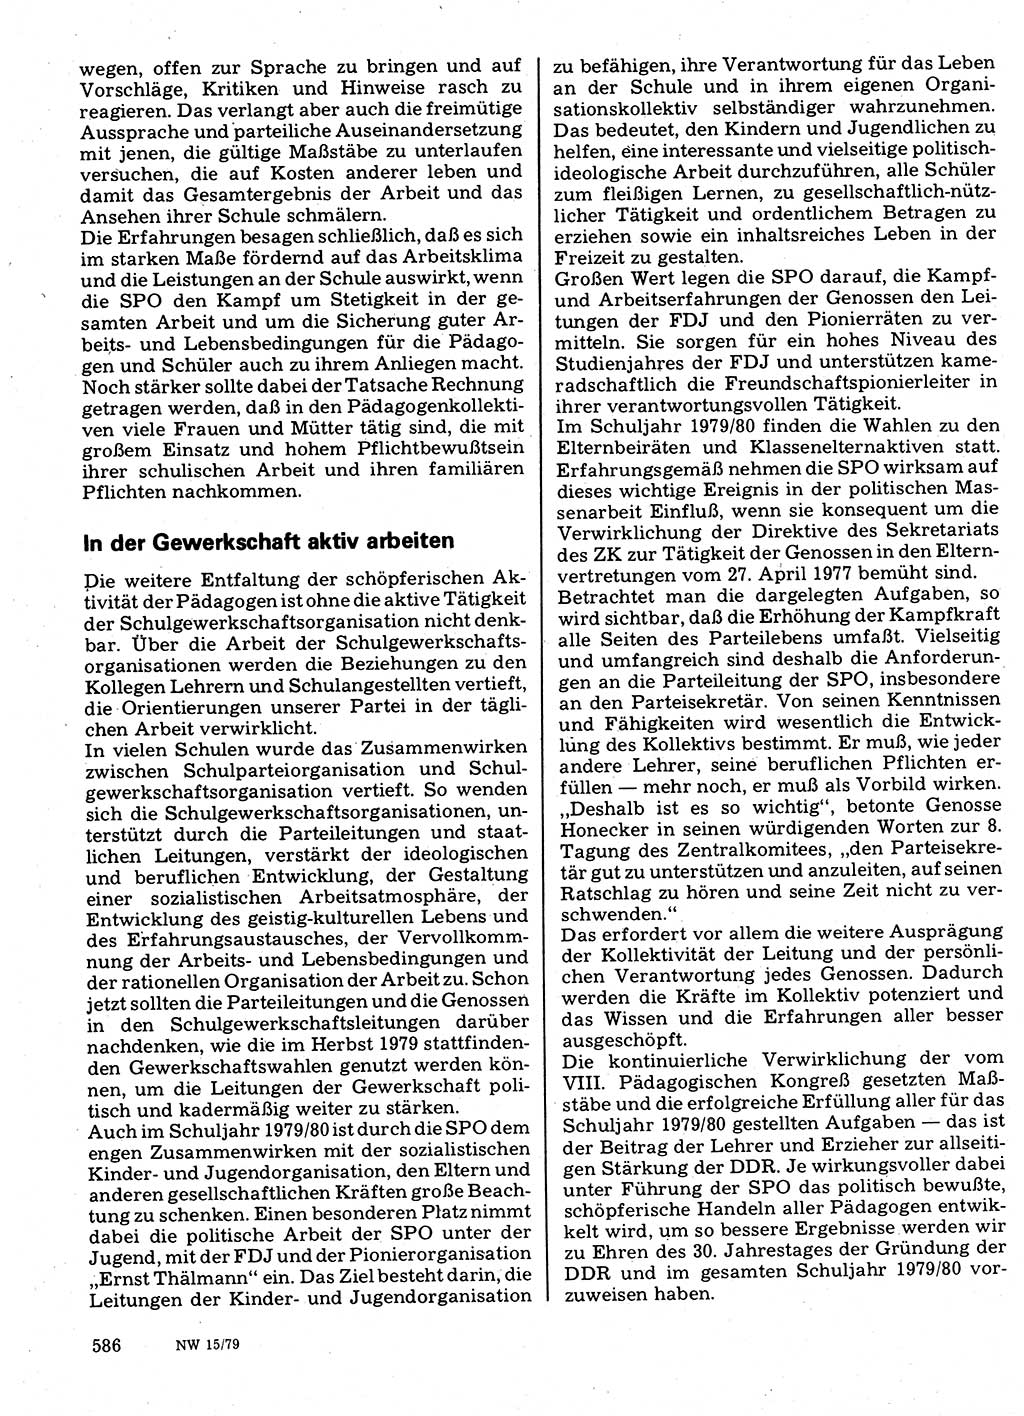 Neuer Weg (NW), Organ des Zentralkomitees (ZK) der SED (Sozialistische Einheitspartei Deutschlands) für Fragen des Parteilebens, 34. Jahrgang [Deutsche Demokratische Republik (DDR)] 1979, Seite 586 (NW ZK SED DDR 1979, S. 586)